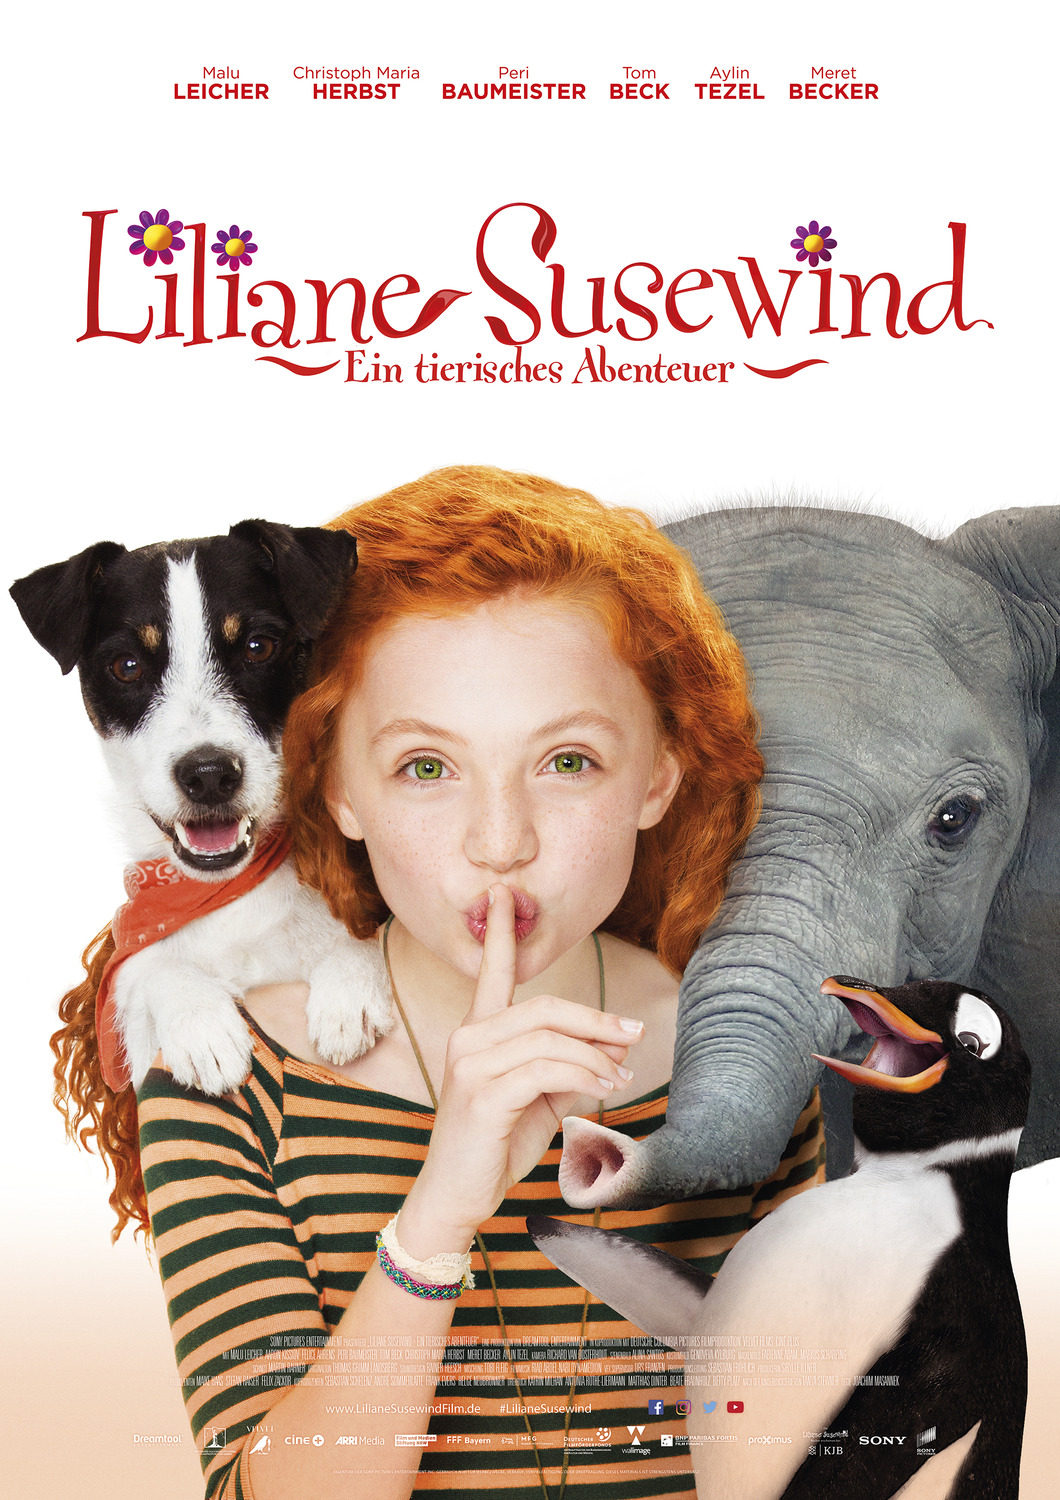 Extra Large Movie Poster Image for Liliane Susewind - Ein tierisches Abenteuer 